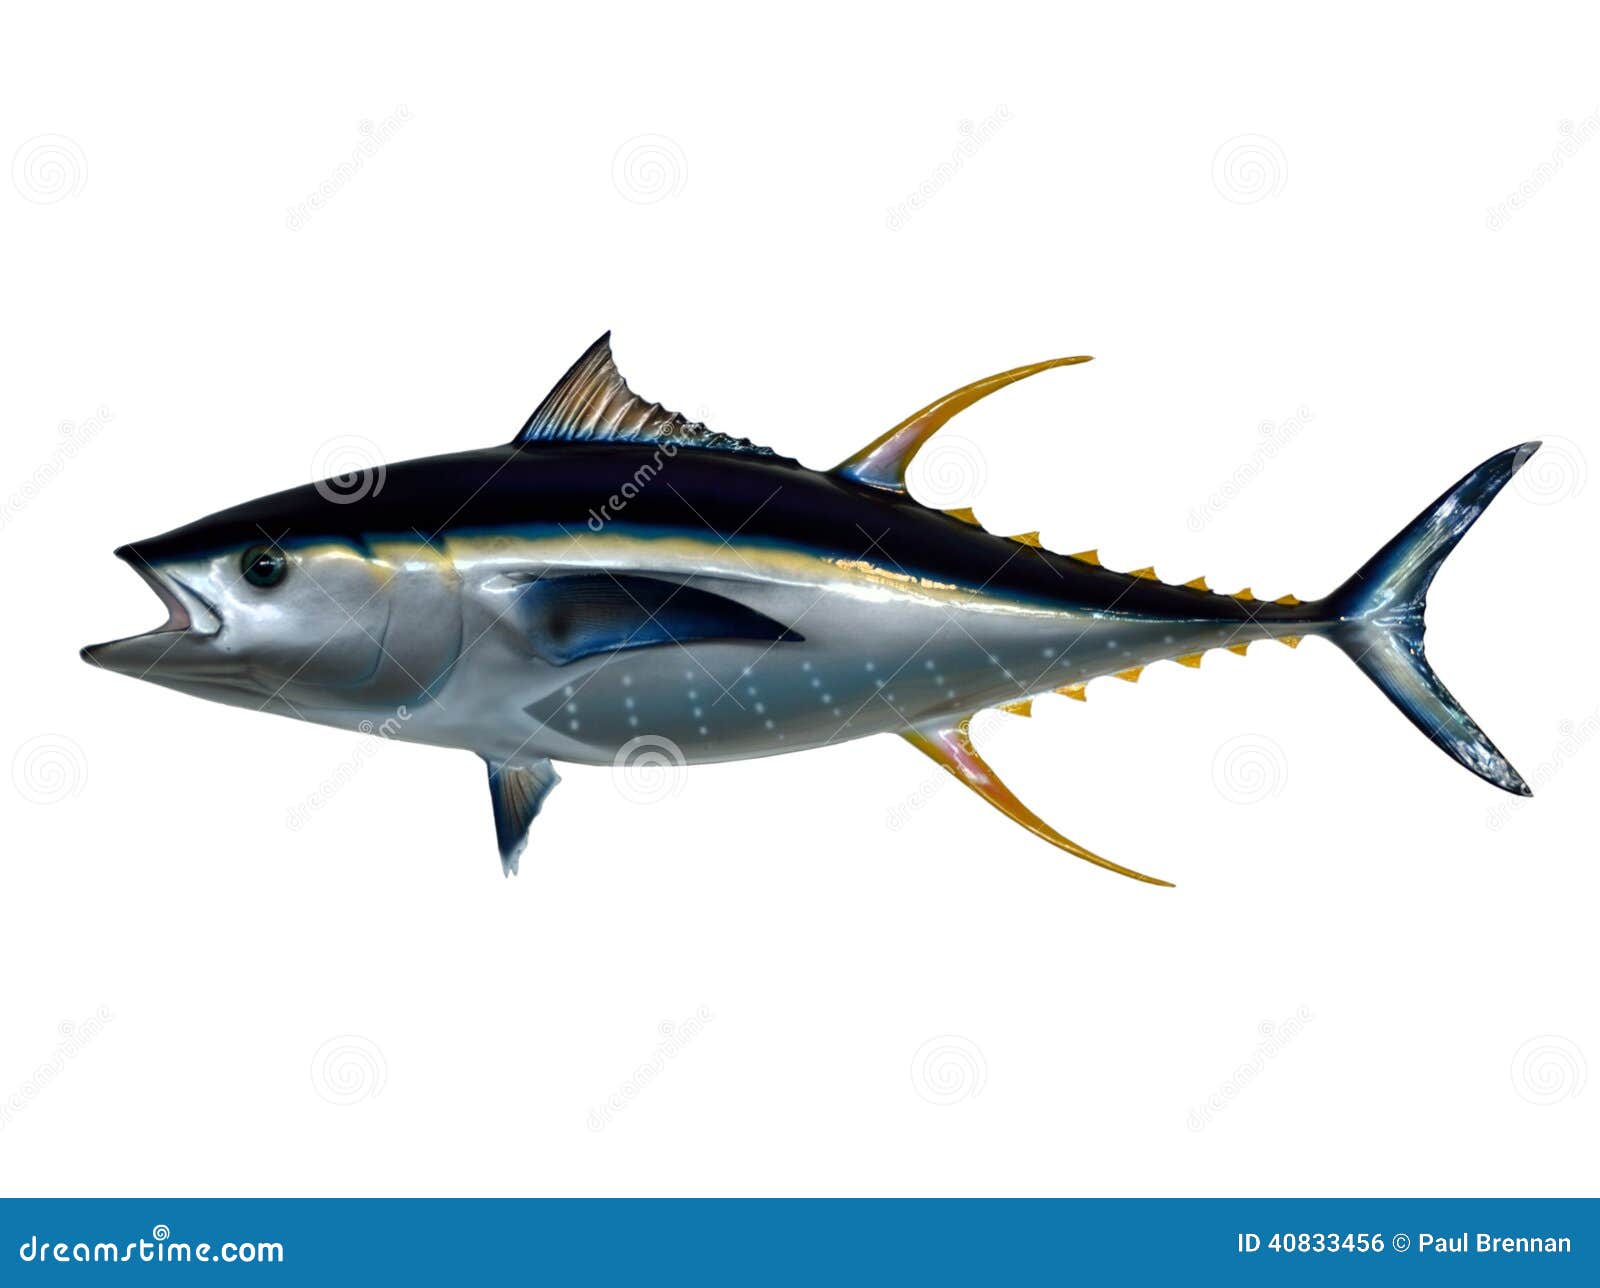 mounted yellowfin tuna